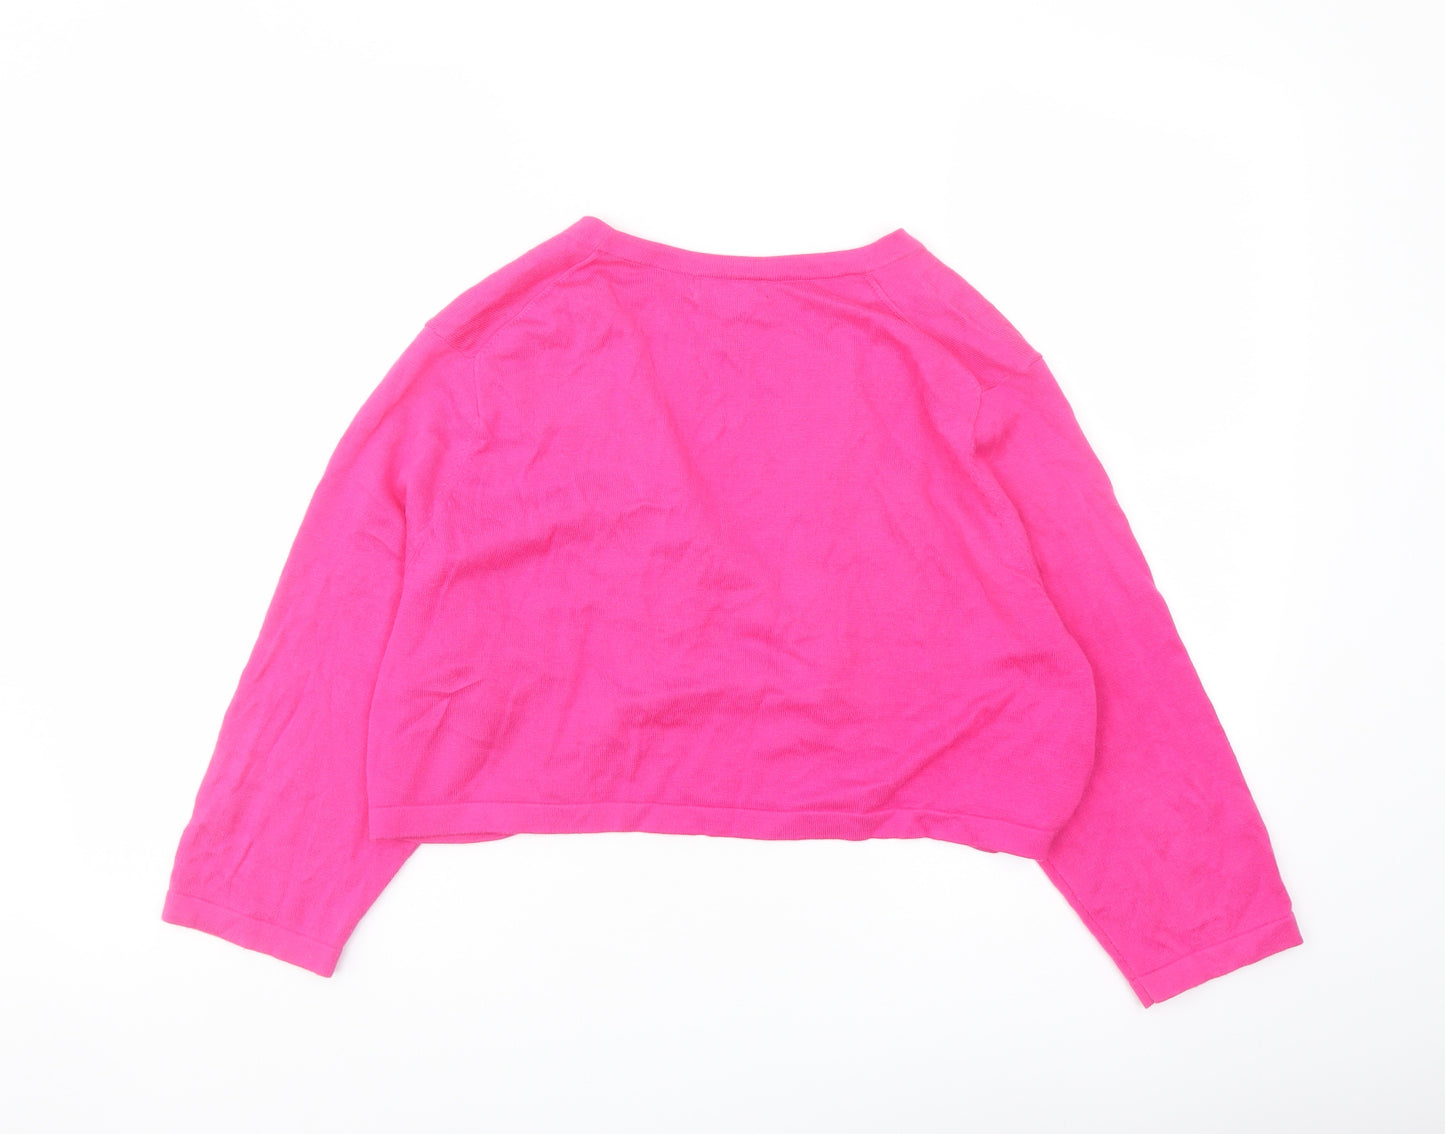 Lands' End Womens Pink V-Neck Cotton Shrug Jumper Size L